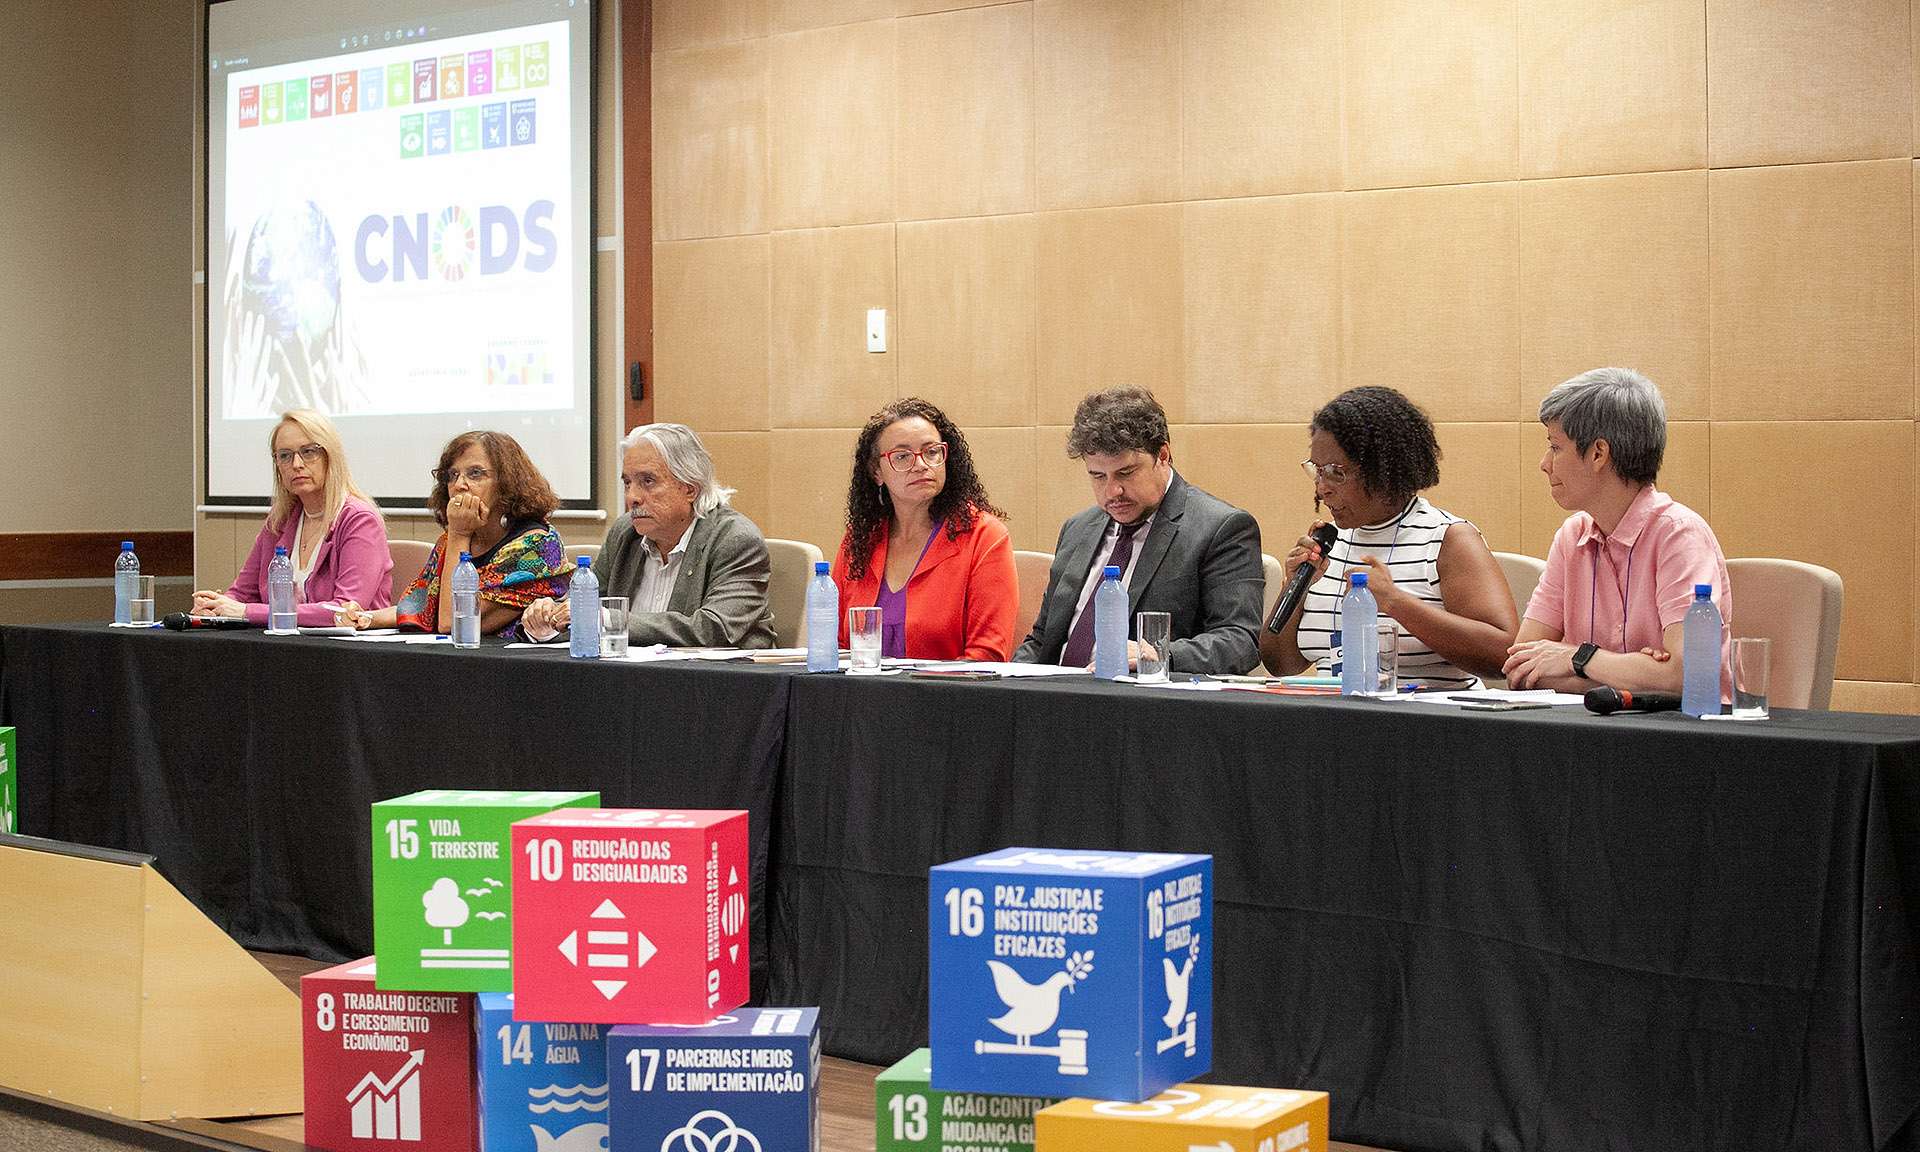 Texto defende “Pacto nacional por um modelo de desenvolvimento sustentável, justo e inclusivo, urgente”